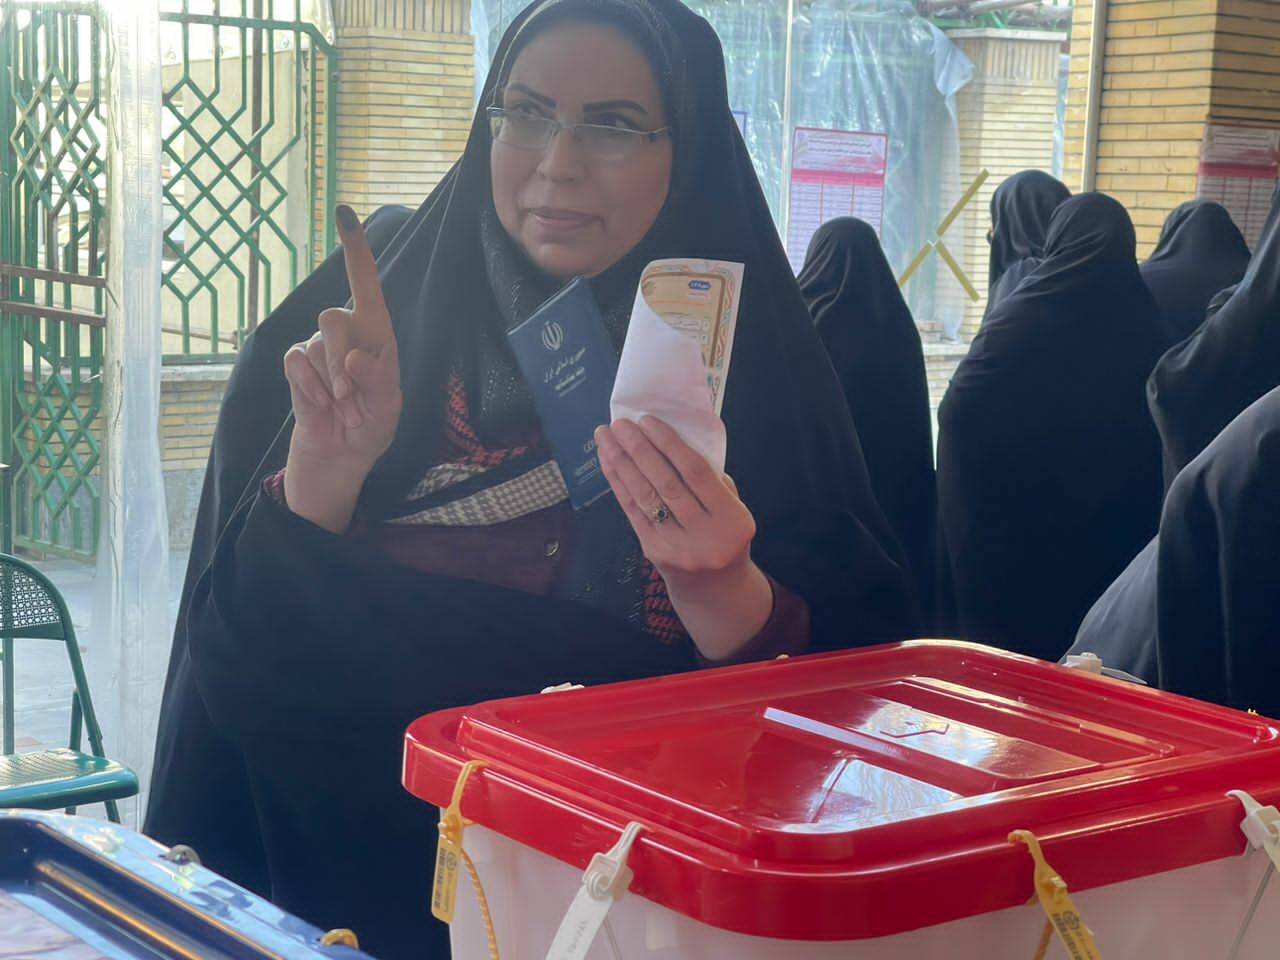 اردبیلی ها برای رای دادن به صف شدند/ازدحام مردم در شعب اخذ رای